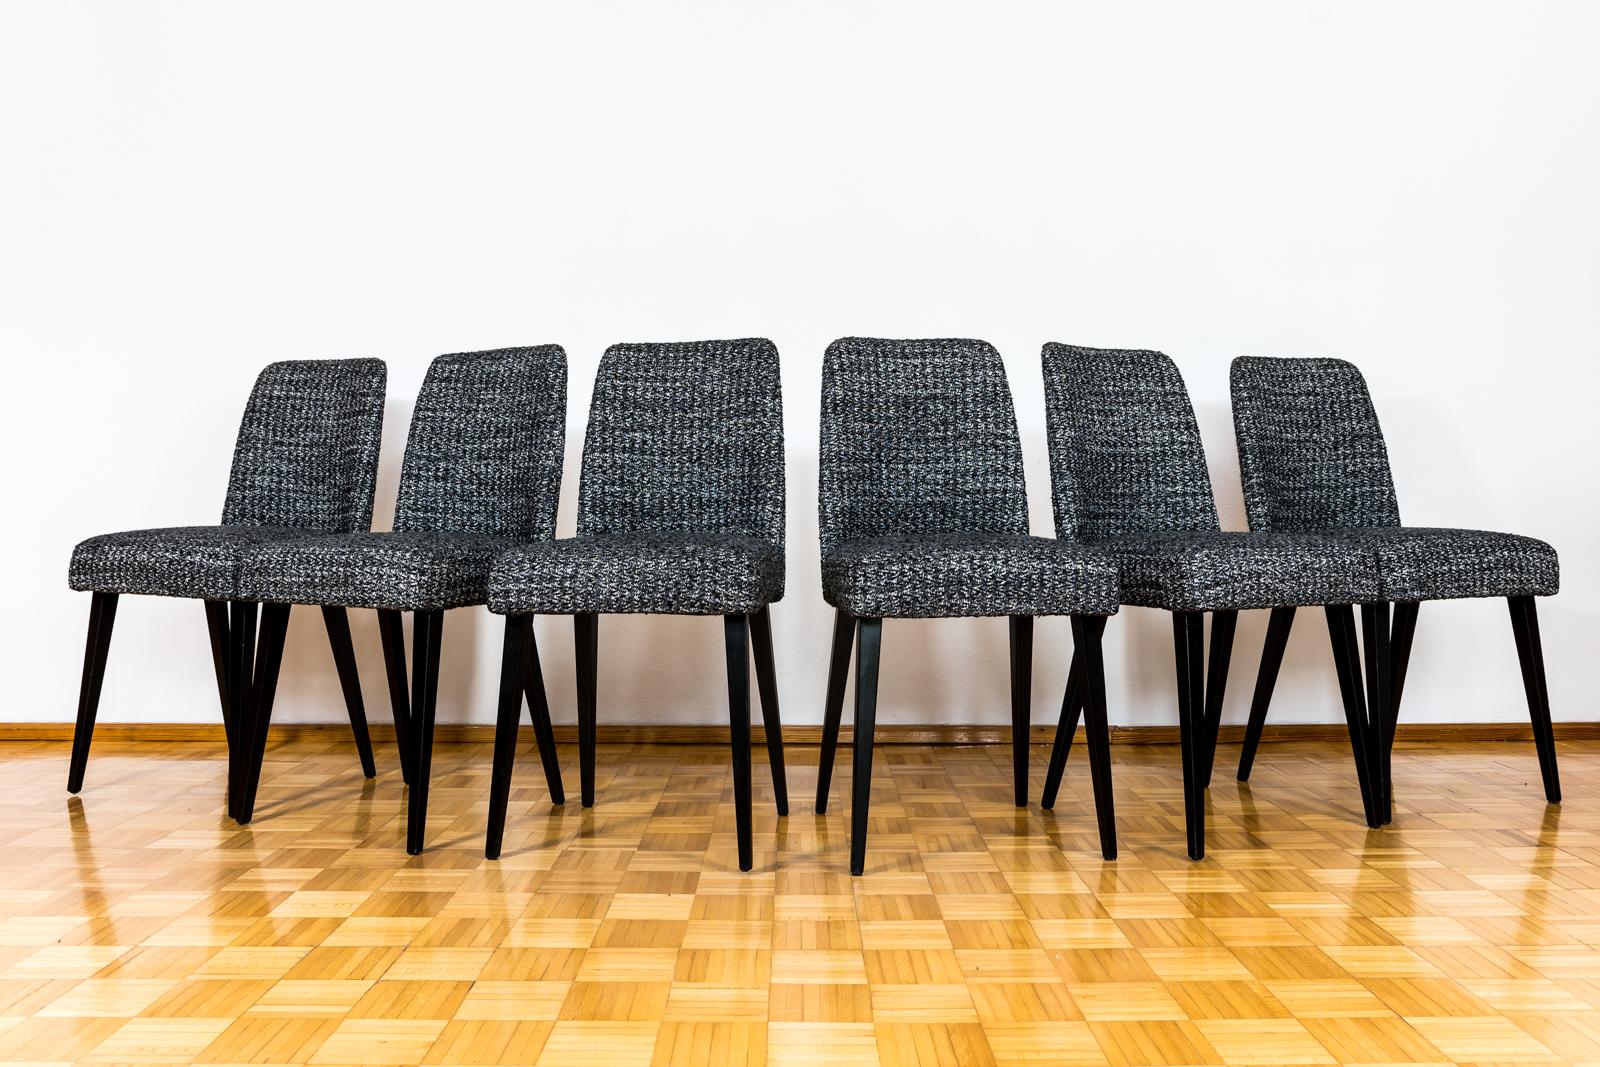 Ensemble de 6 chaises noires du milieu du siècle fabriquées dans la fabrique de meubles de Swarzedz, en Pologne, dans les années 1960.
Les dossiers sont en contreplaqué cintré, les pieds en bois ont été entièrement restaurés et remis à